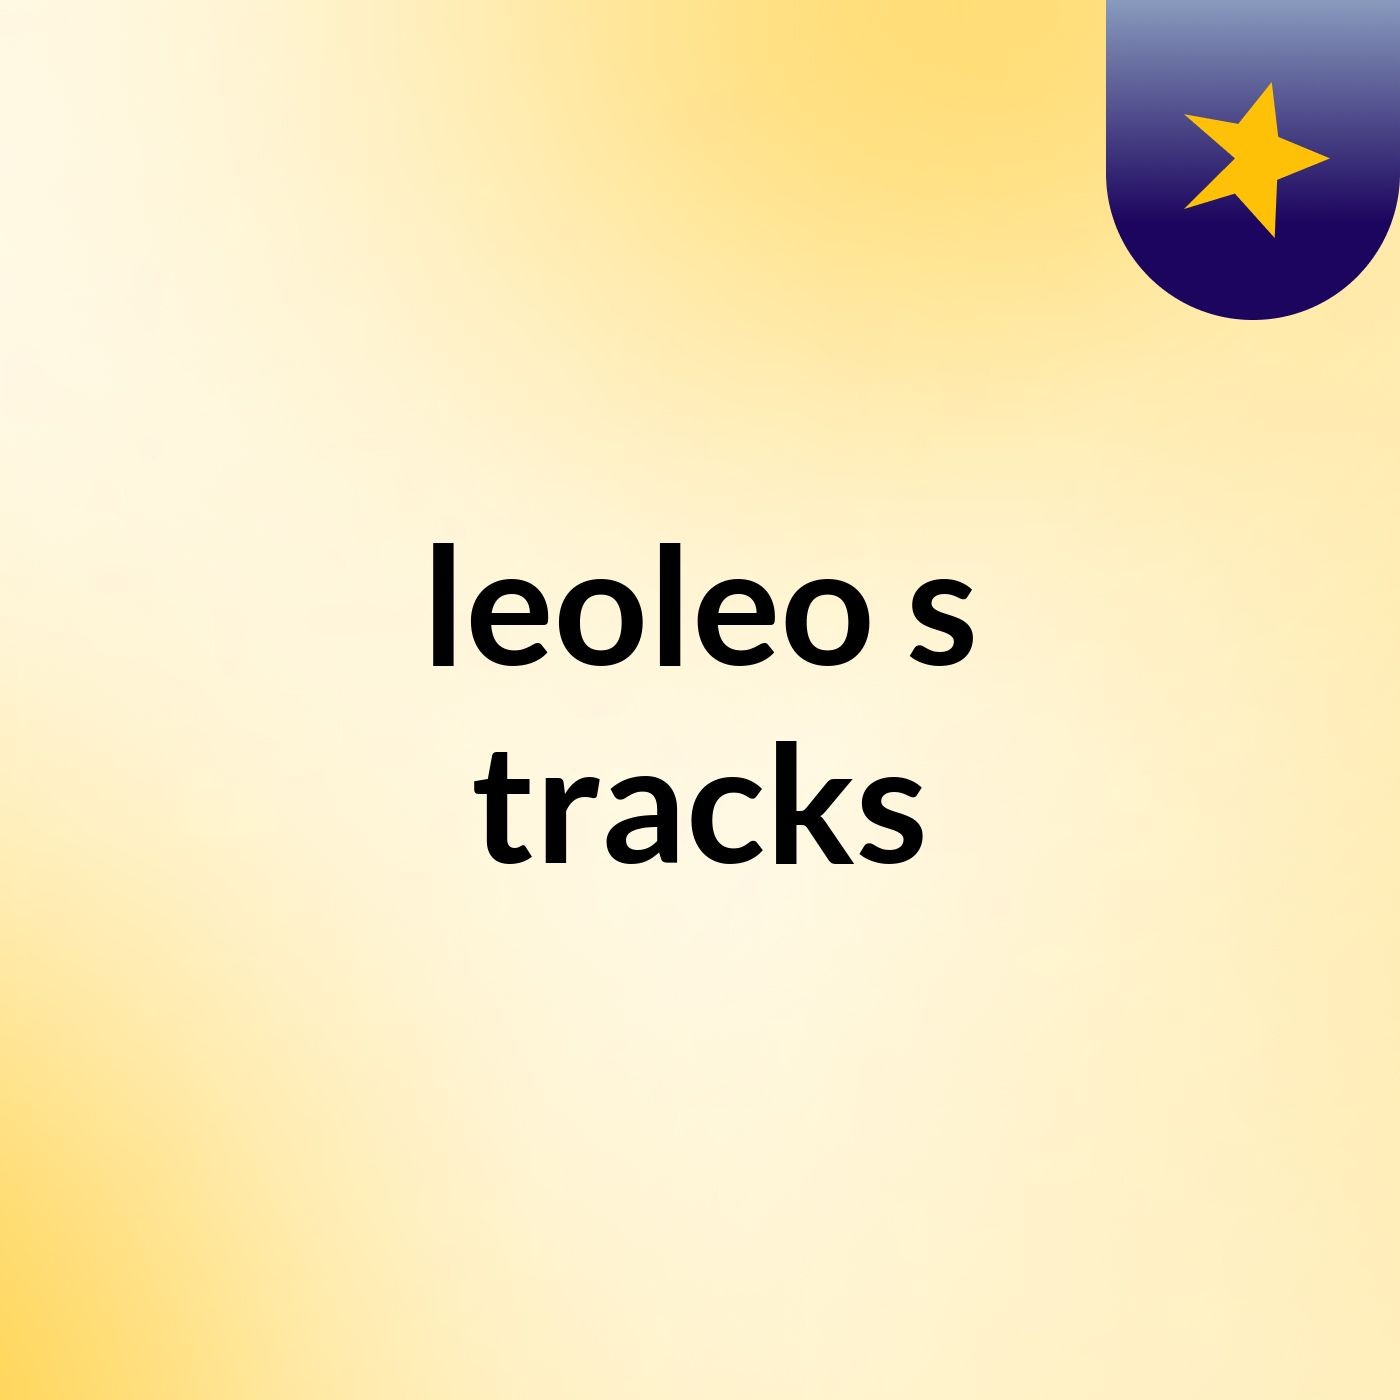 leoleo's tracks